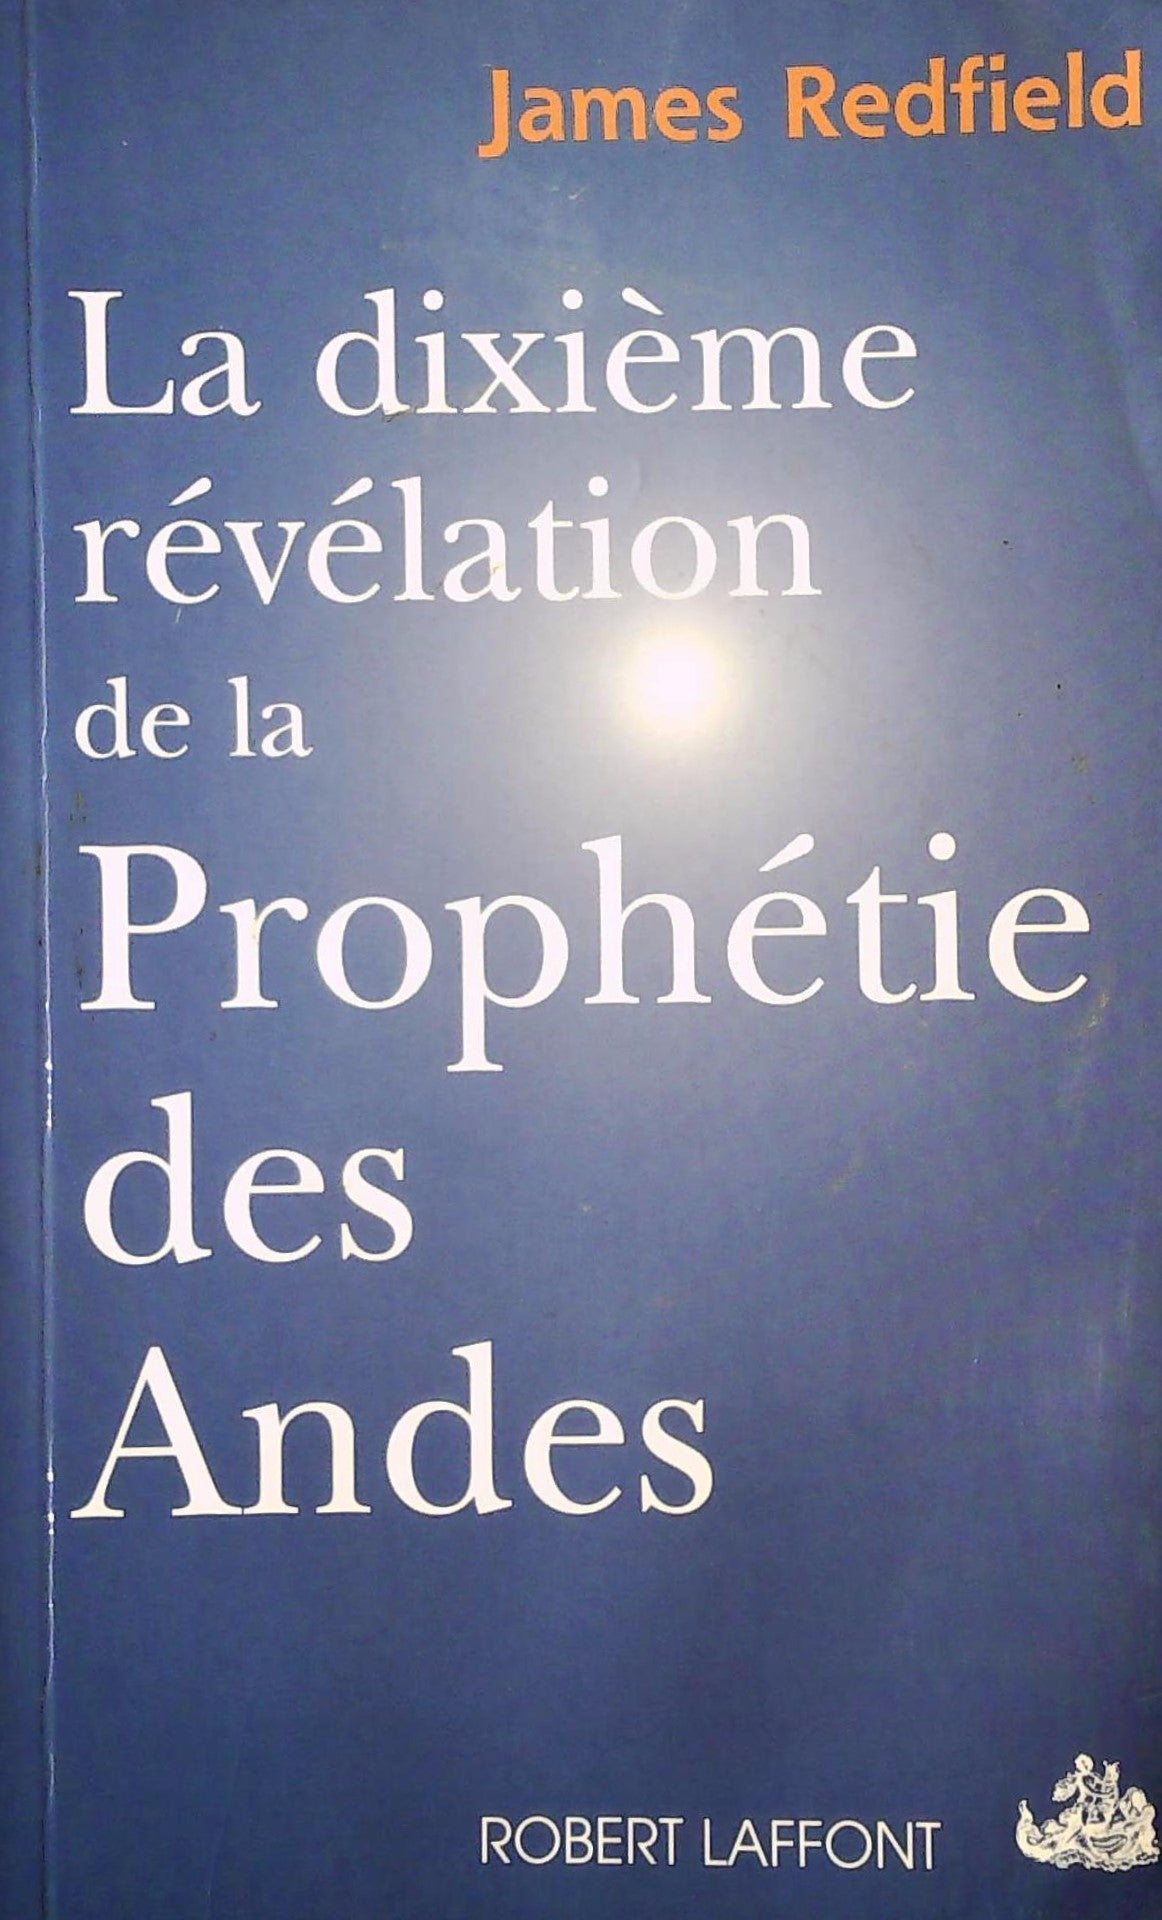 Les aventures de l'esprit : La dixième prophétie: comment conserver la vision et approfondir la prophétie de James Redfield - James Redfield